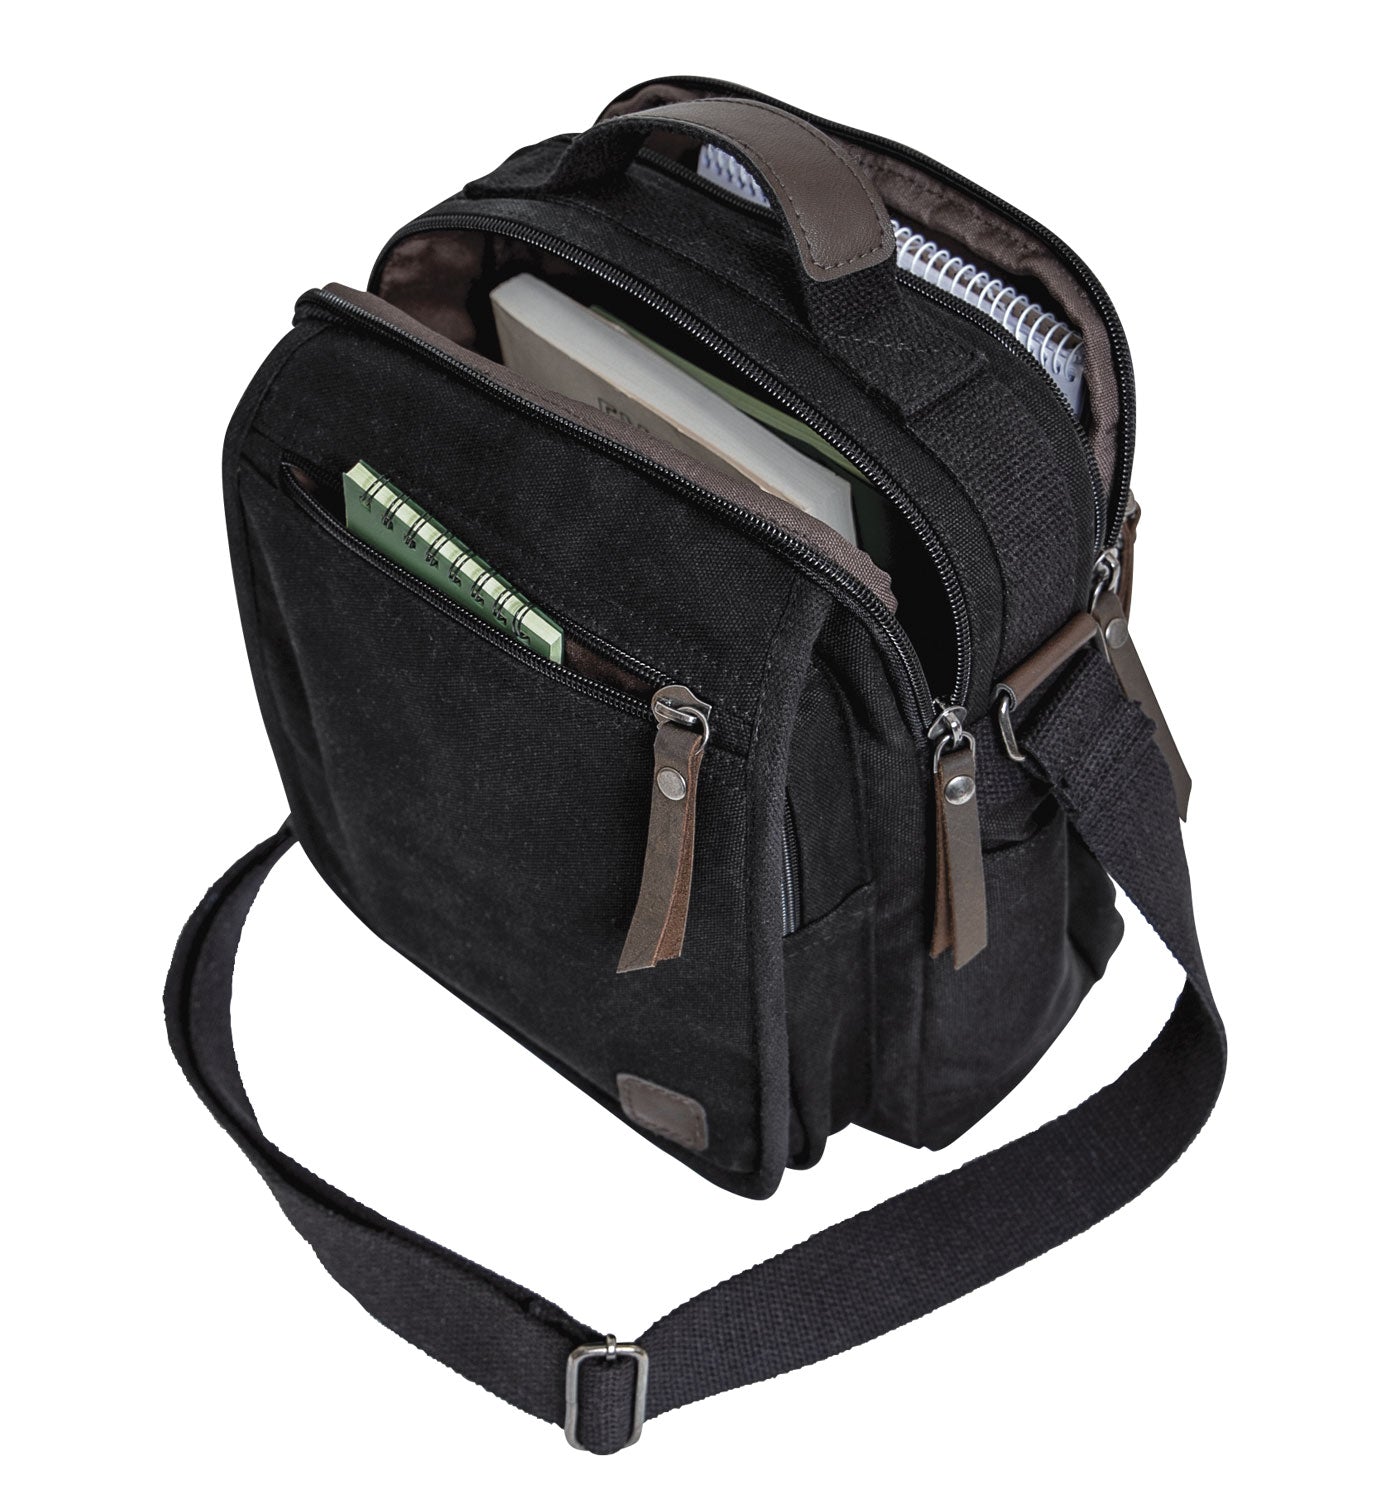 Milspec Everyday Work (EDC) Shoulder Bag Messenger & Shoulder Bags MilTac Tactical Military Outdoor Gear Australia